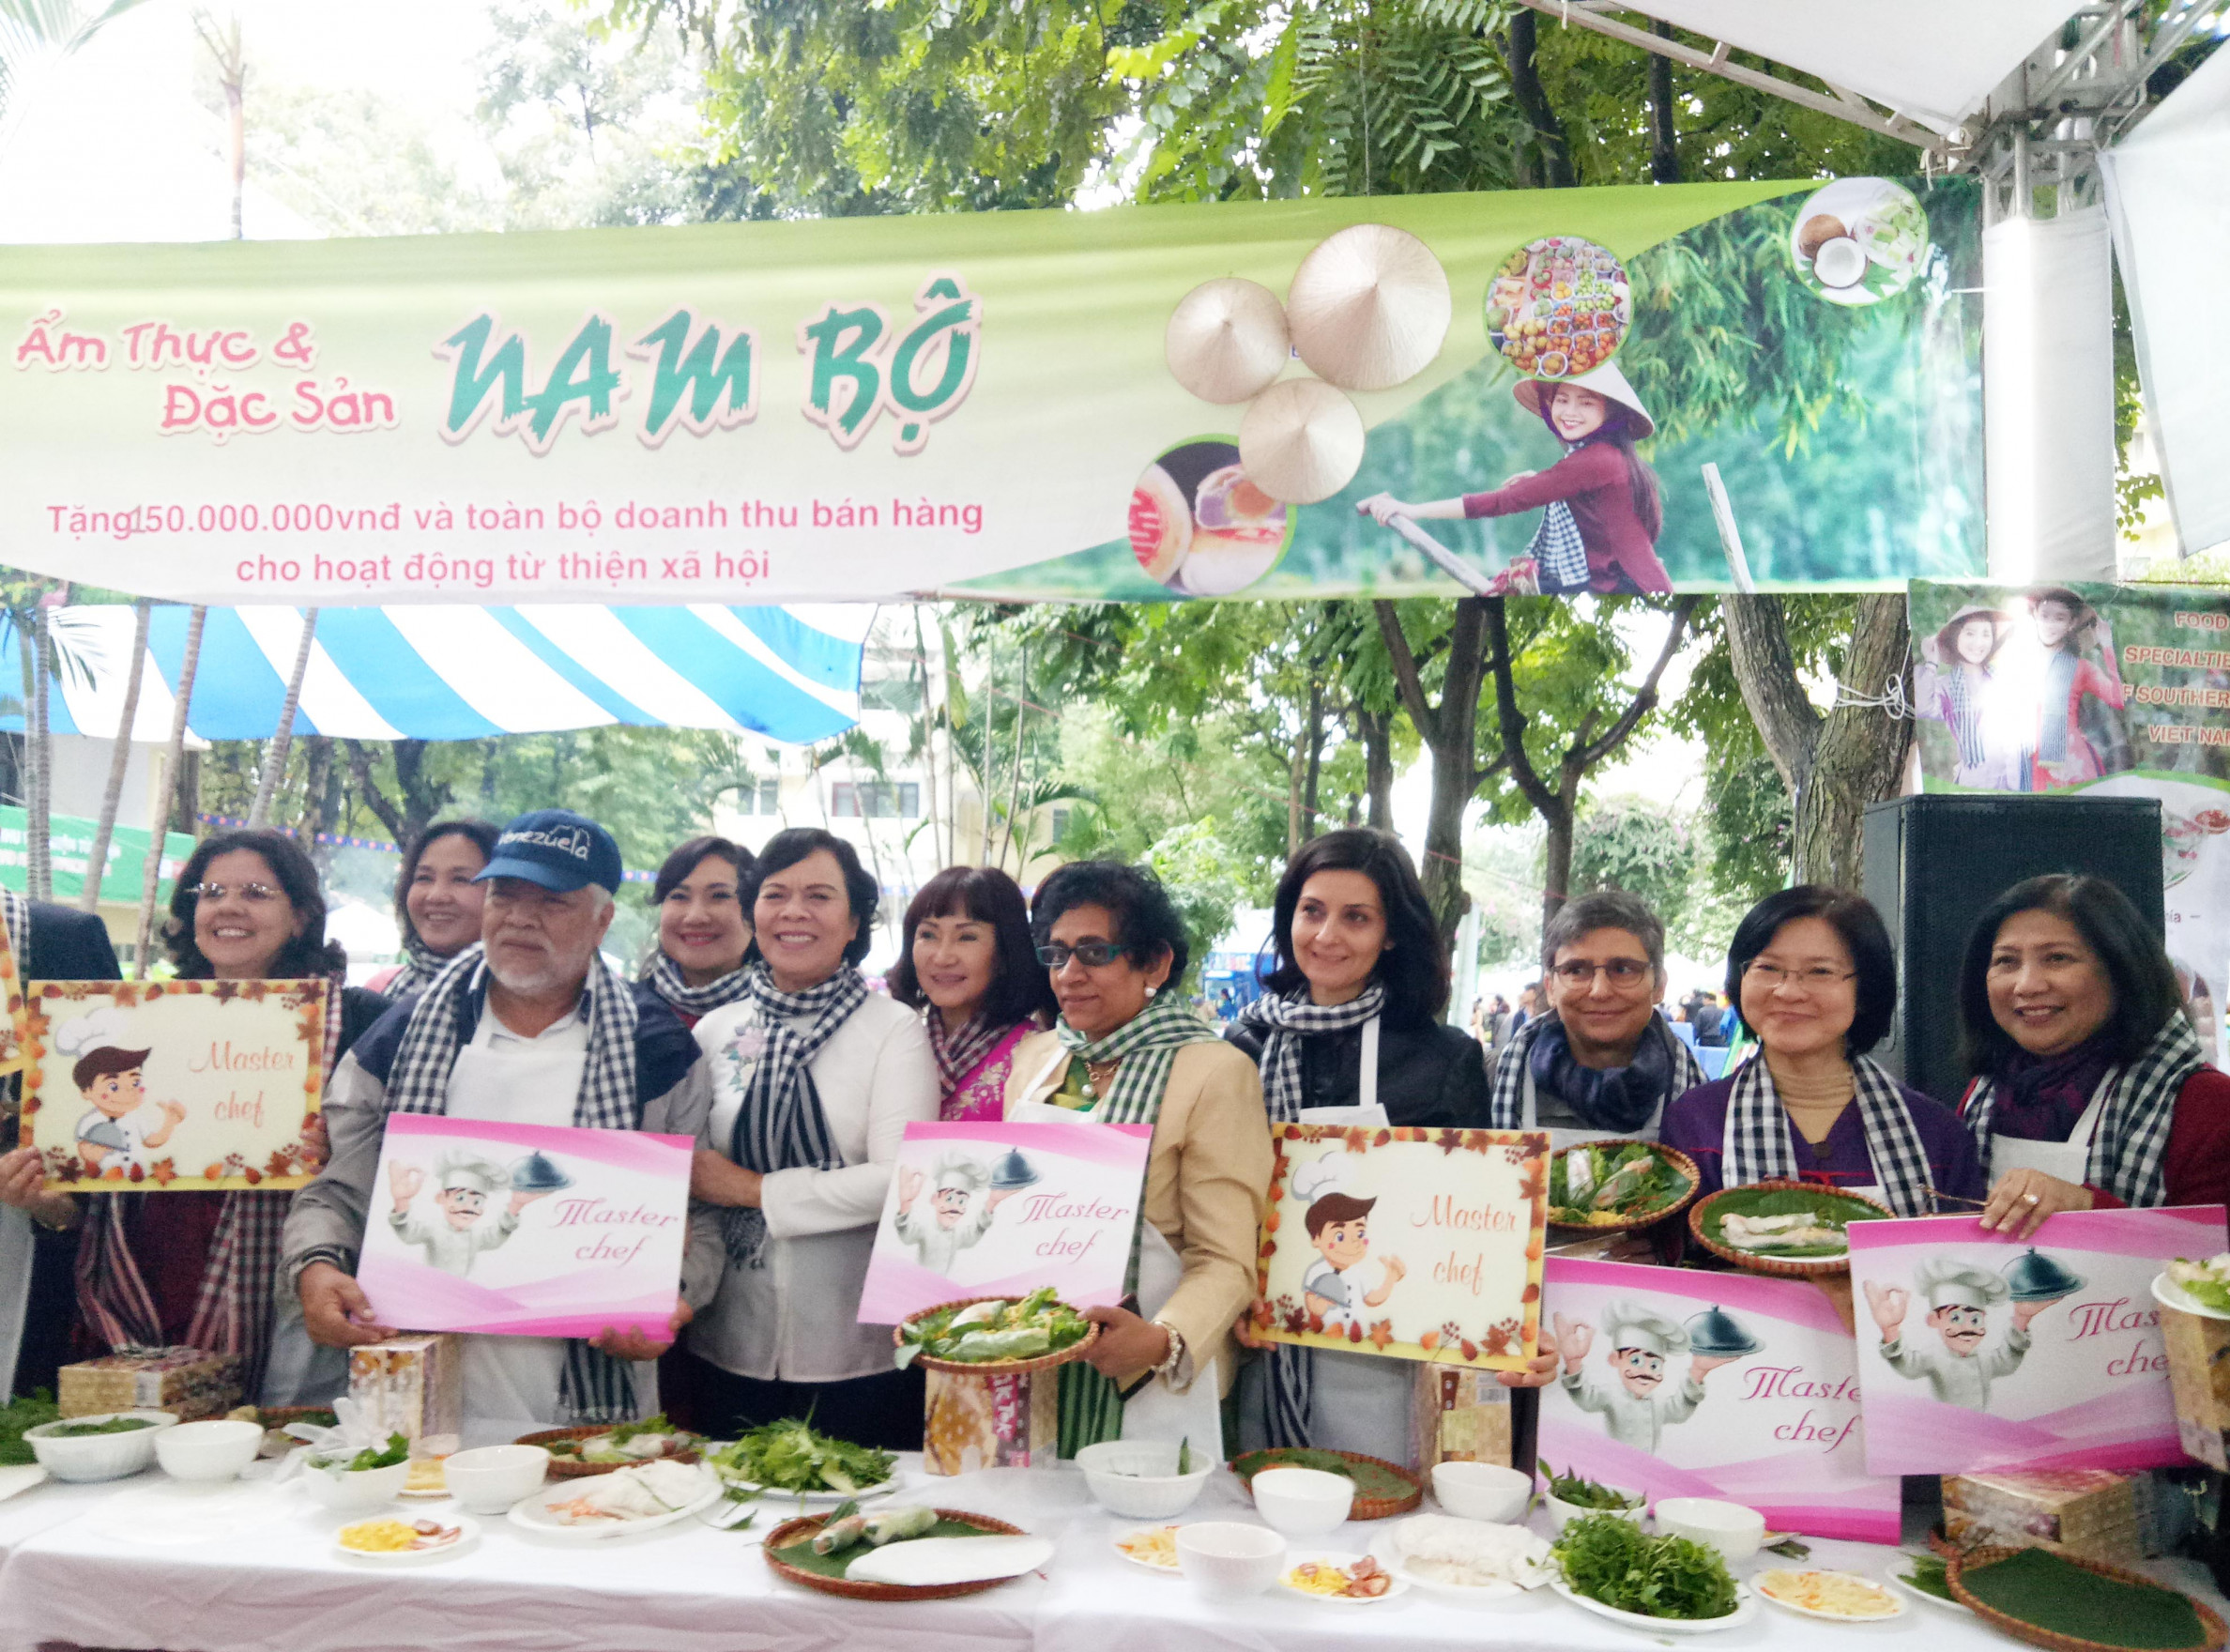 Năm nay, tại Gian hàng Nam Bộ đã tổ chức cuộc thi Master Chef of South. Bà Mai Thị Hạnh - Phu nhân nguyên Chủ tịch nước Trương Tấn Sang đã trao quà cho các đại sứ đạt giải trong cuộc thi.

